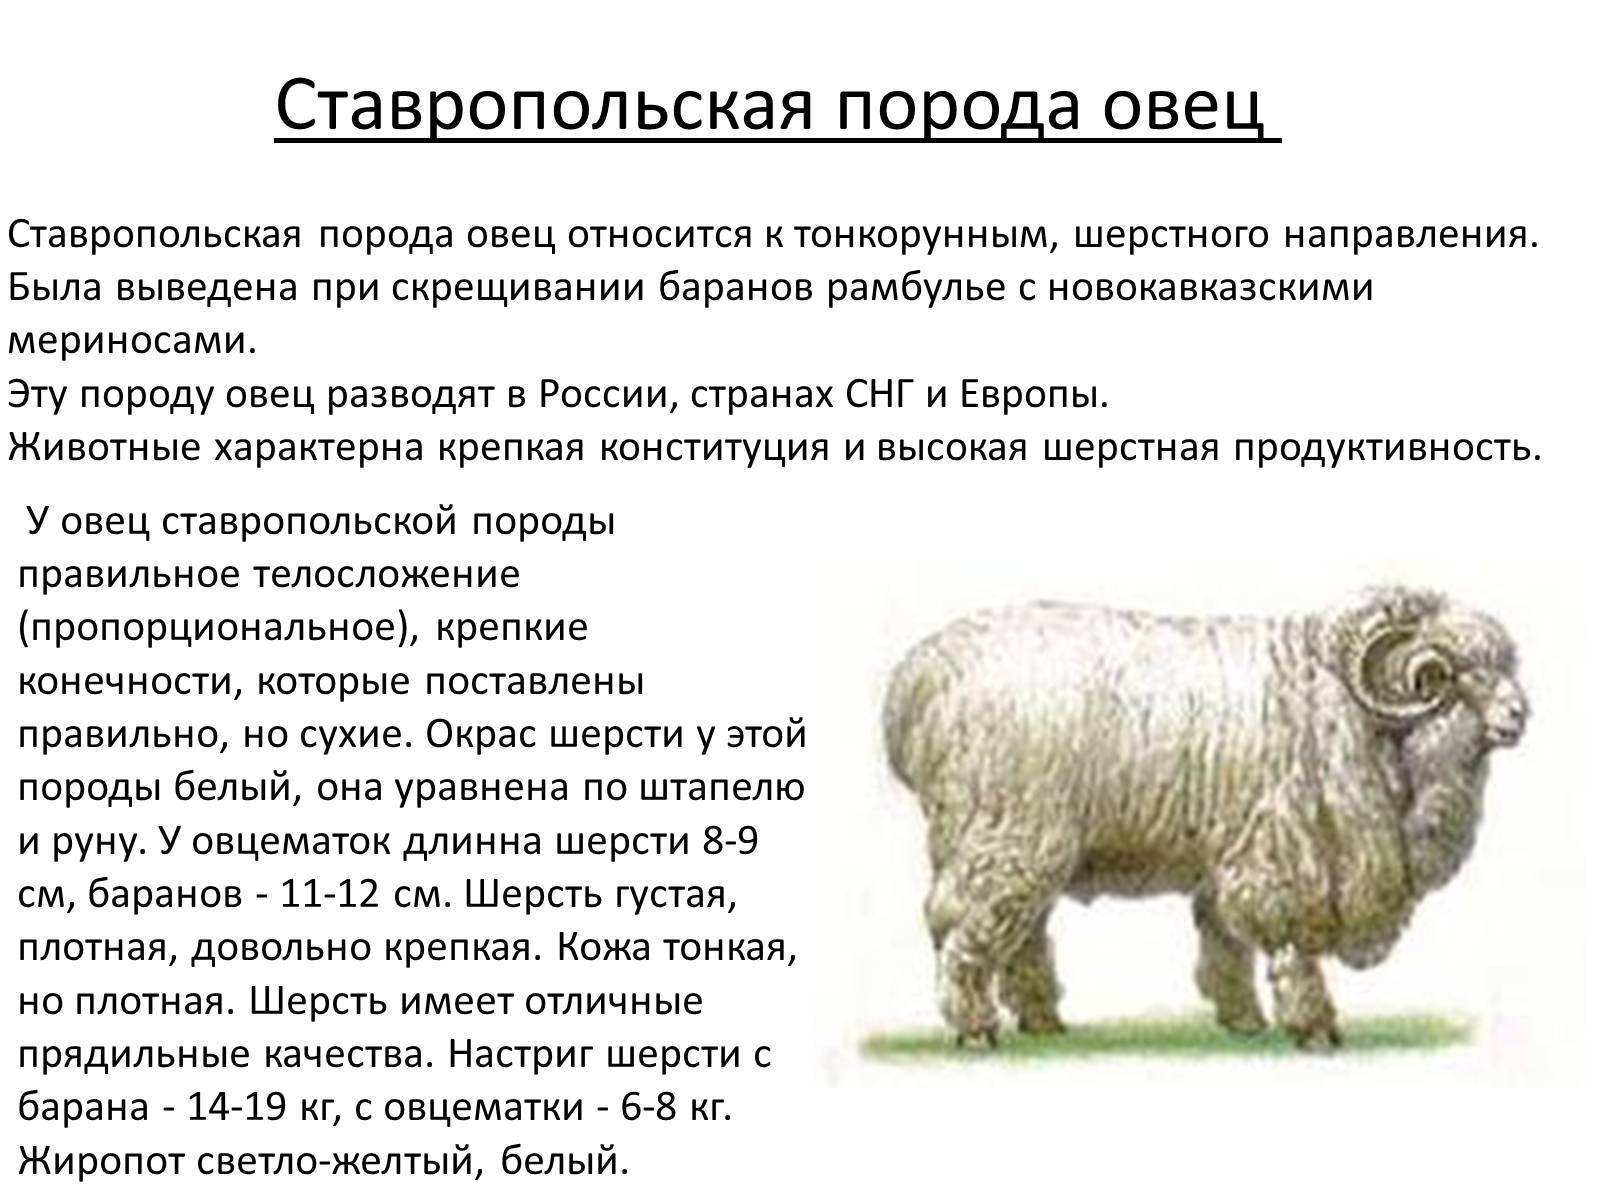 Сколько вес барана. Ставропольский меринос порода овец. Порода мериносовых Ставропольская овец. Ставропольская тонкорунная порода овец. Ставропольская тонкорунная овца.